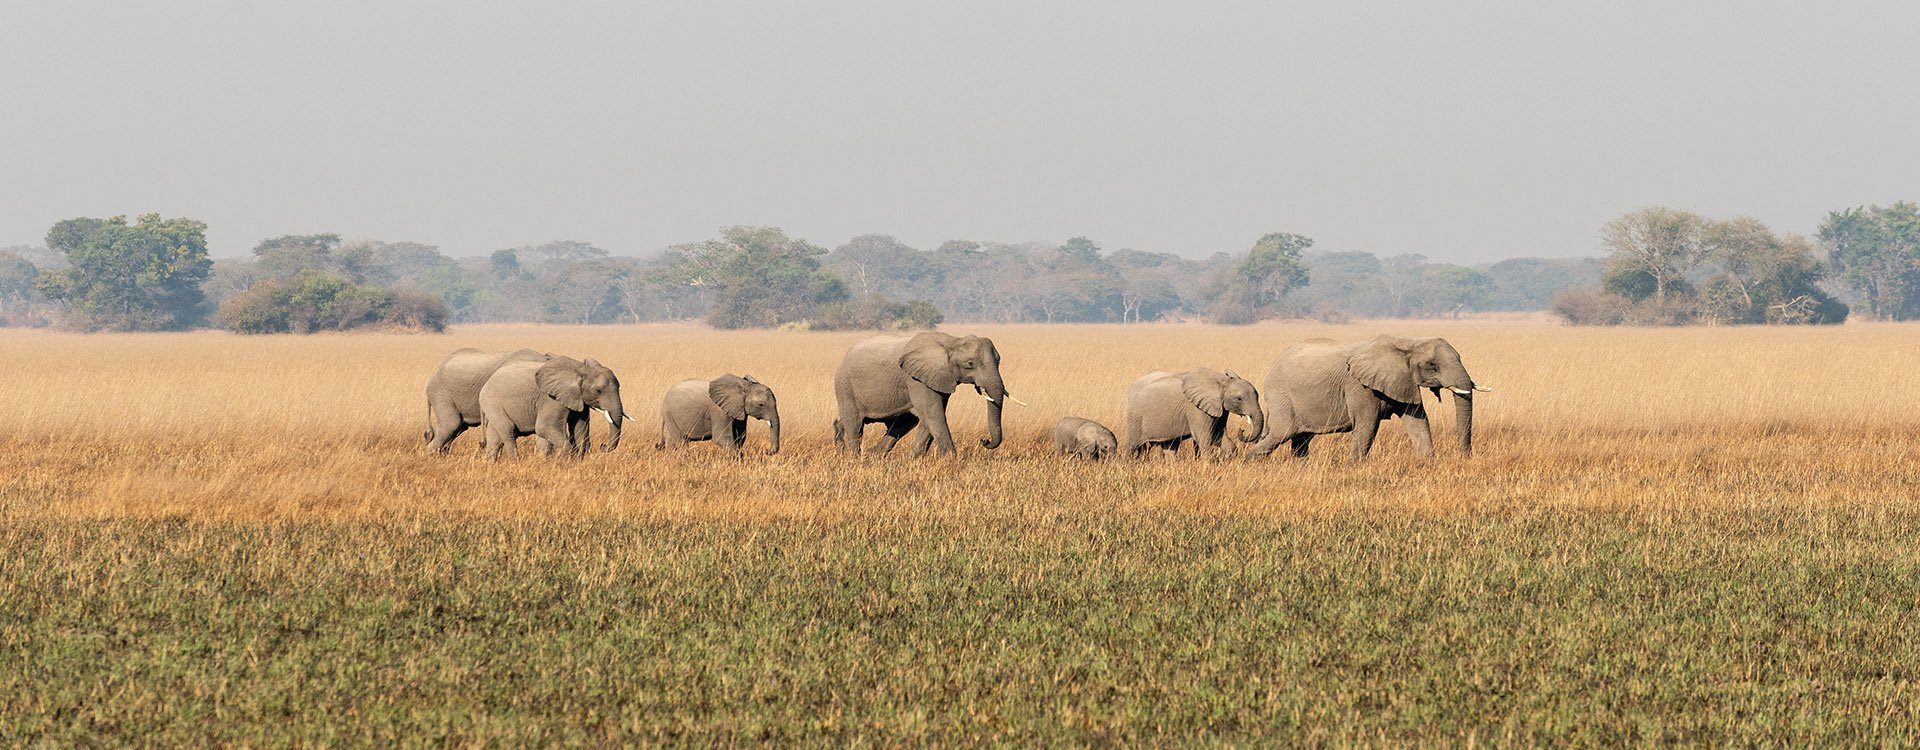 Zambia_Parade of Elephants